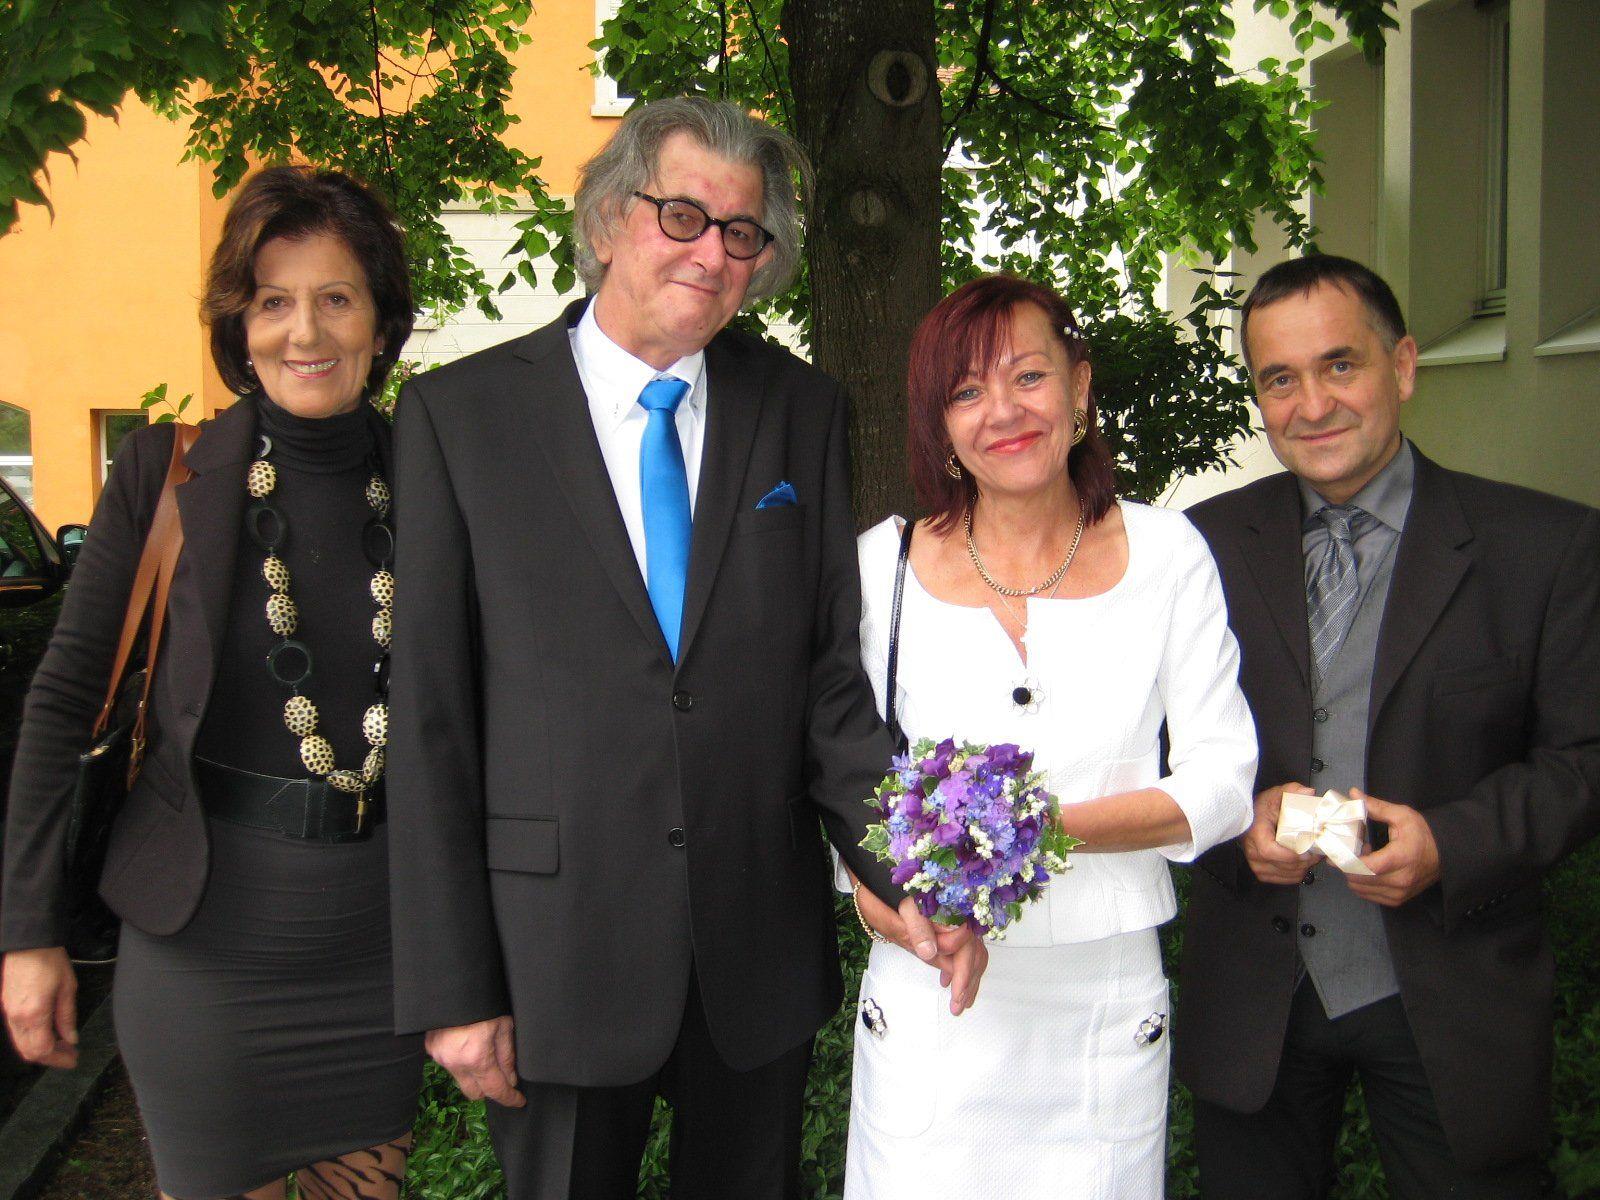 Margit Herb und Klaus Mittelberger haben geheiratet.